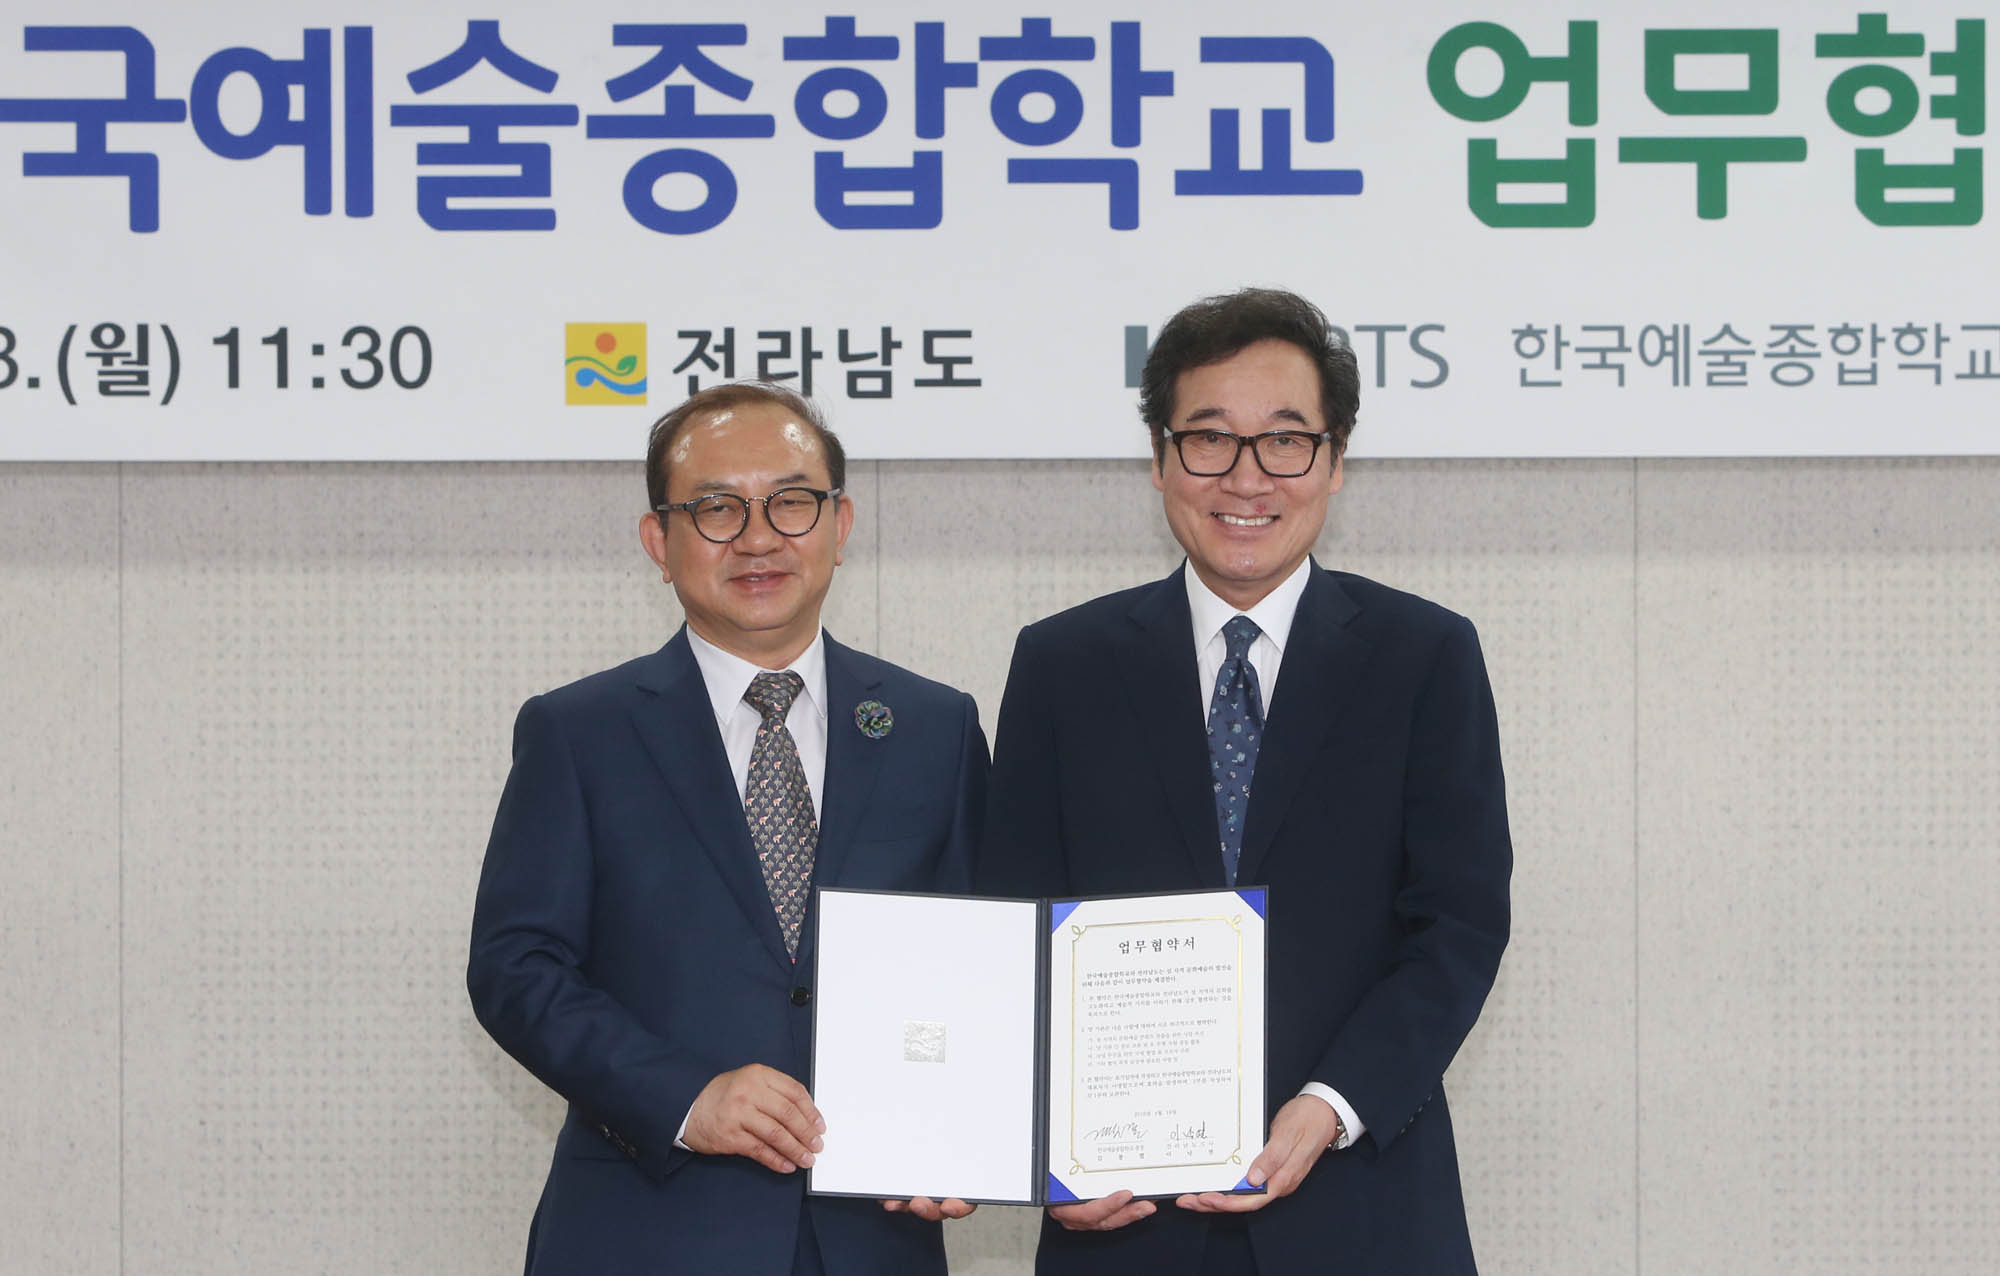 김봉렬 한국예술종합학교 총장과 이낙연(사진 오른쪽) 전남도지사